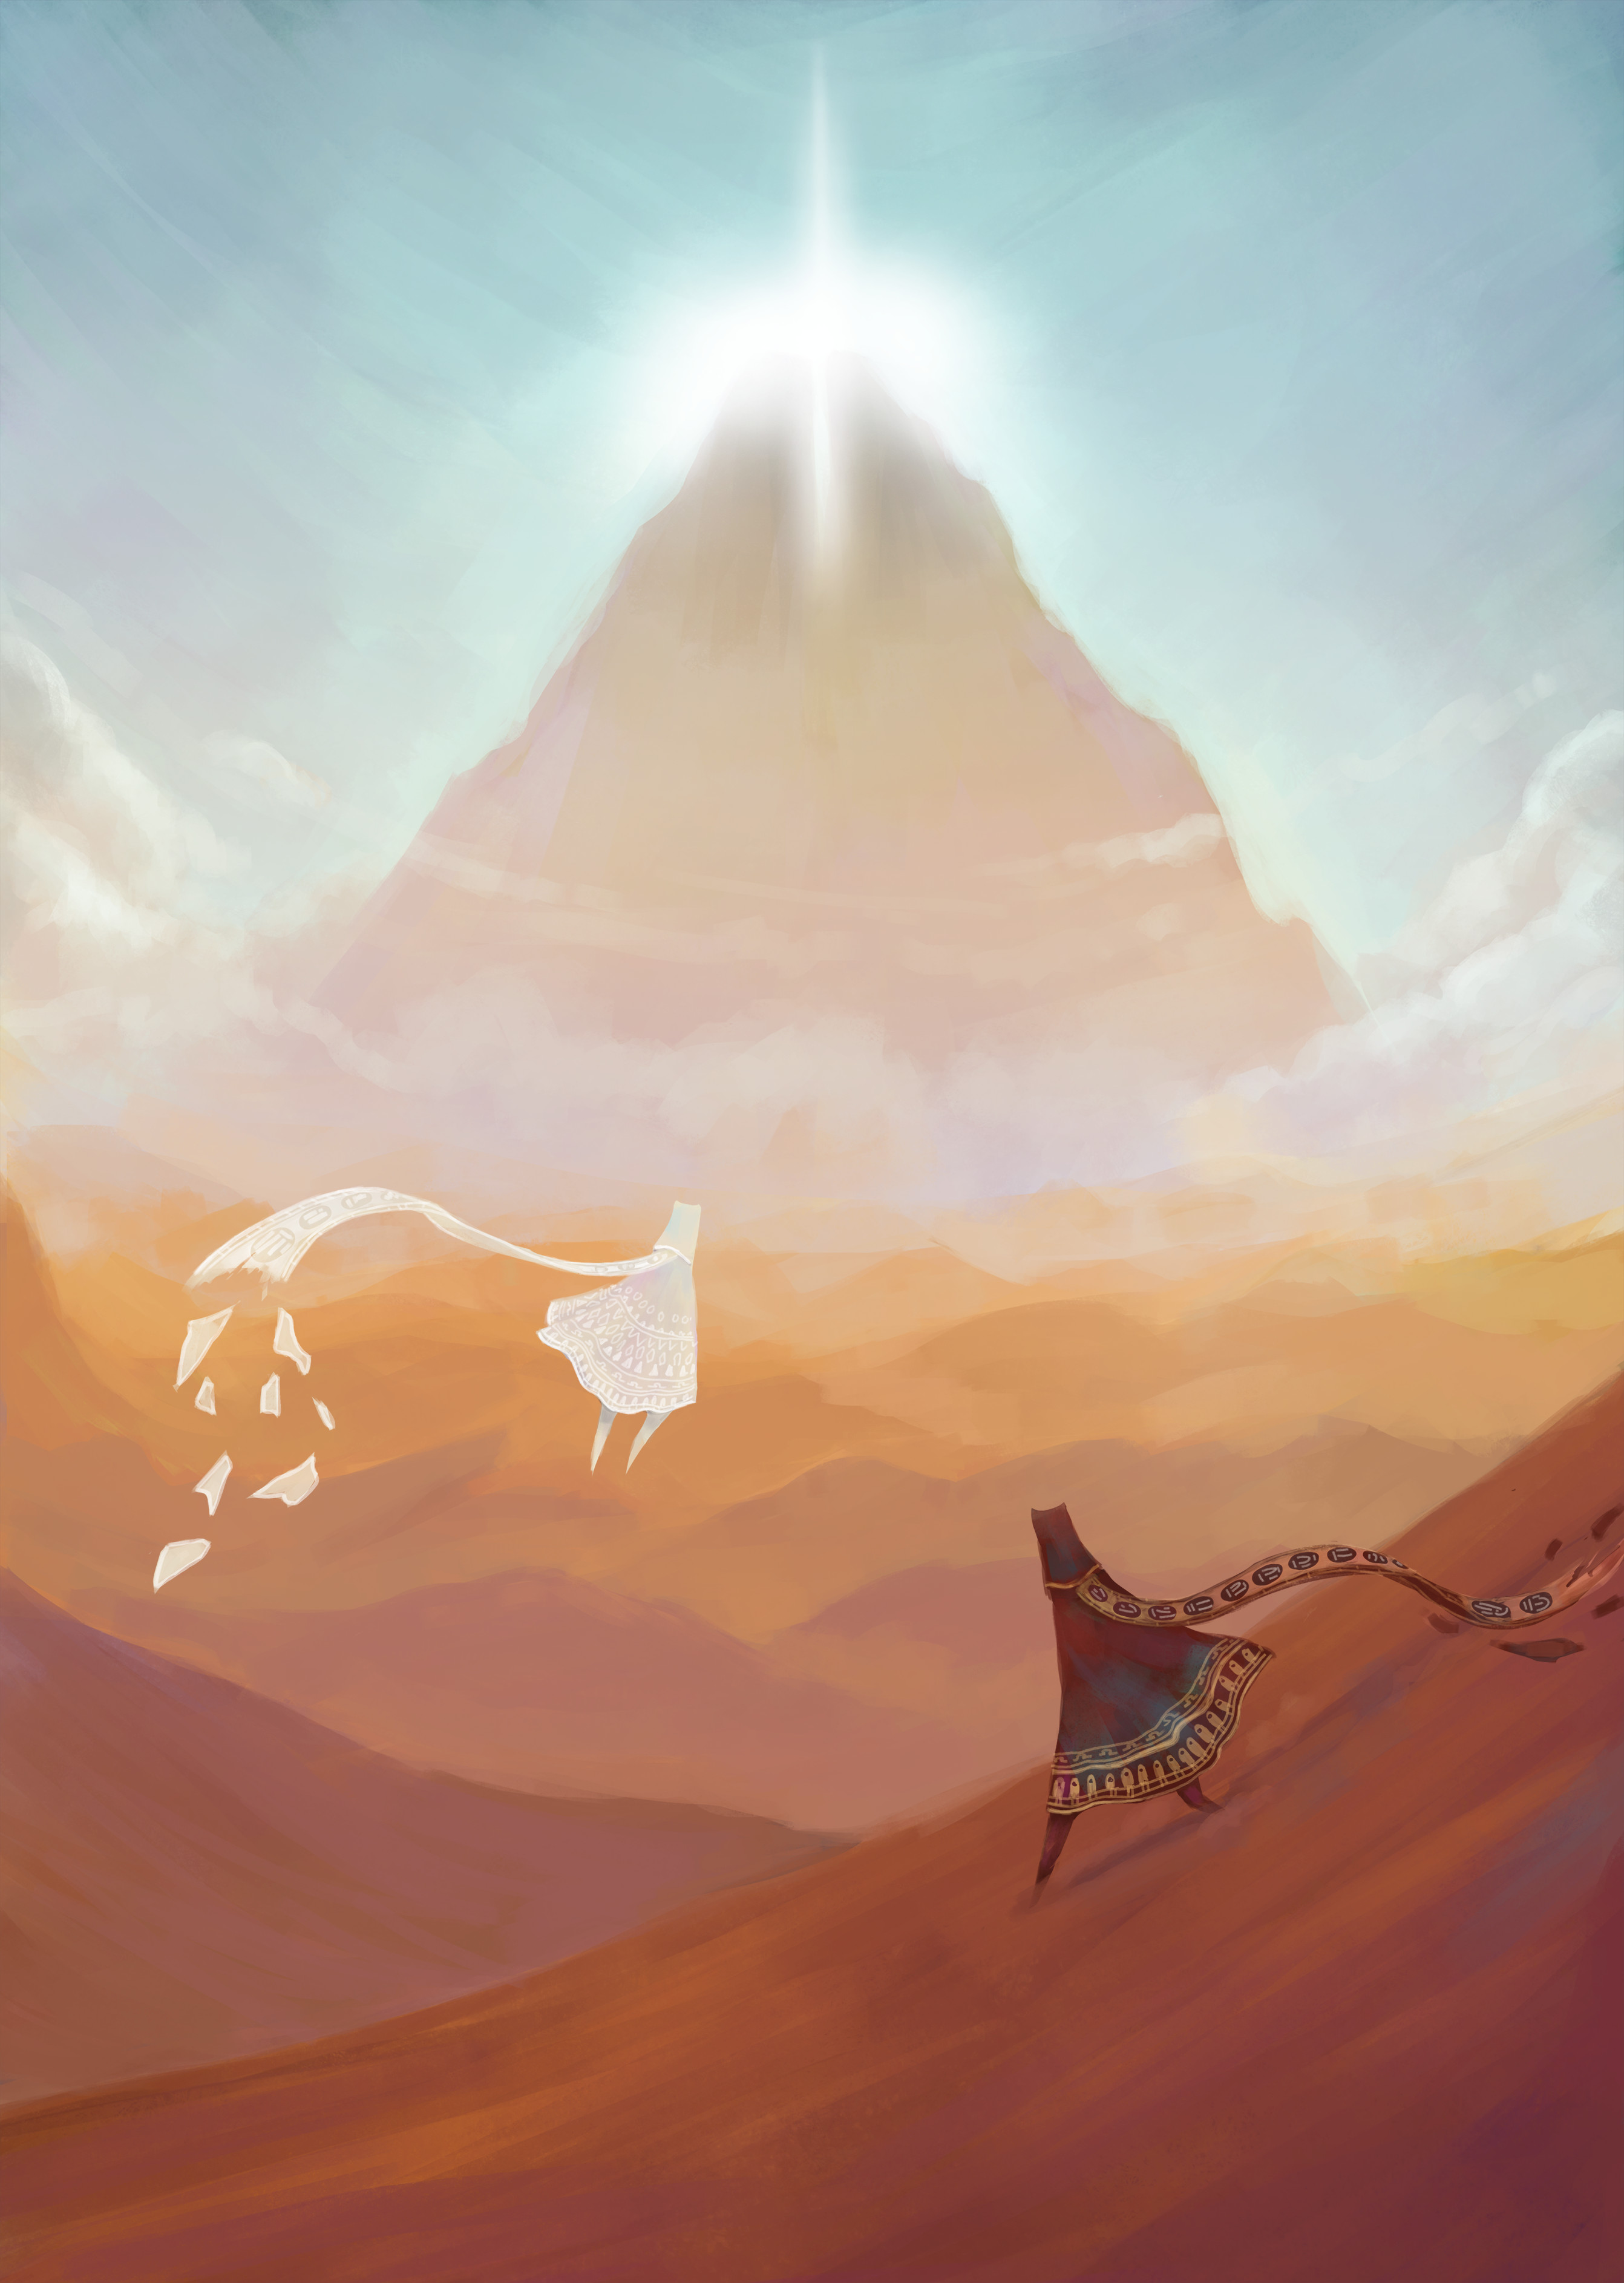 Veronica ONeill Digital Art Fantasy Art Journey Game Desert Sand Mountains 2684x3773